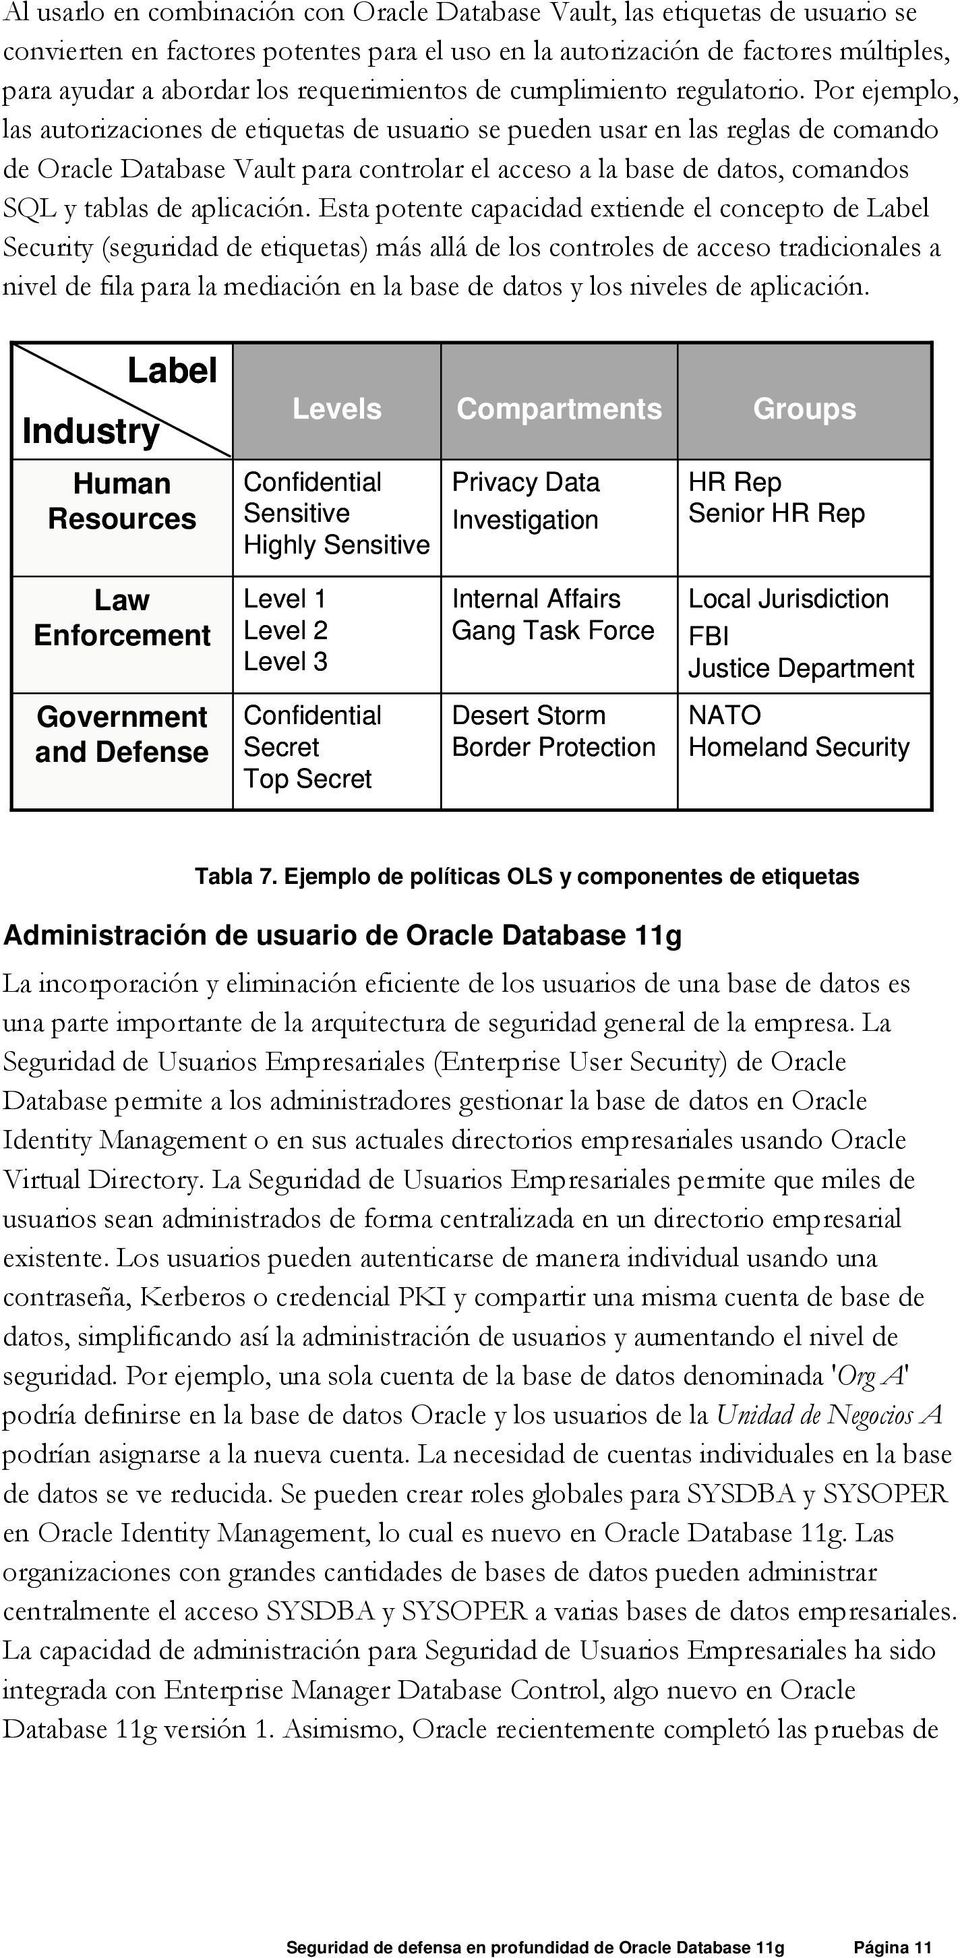 Por ejemplo, las autorizaciones de etiquetas de usuario se pueden usar en las reglas de comando de Oracle Database Vault para controlar el acceso a la base de datos, comandos SQL y tablas de